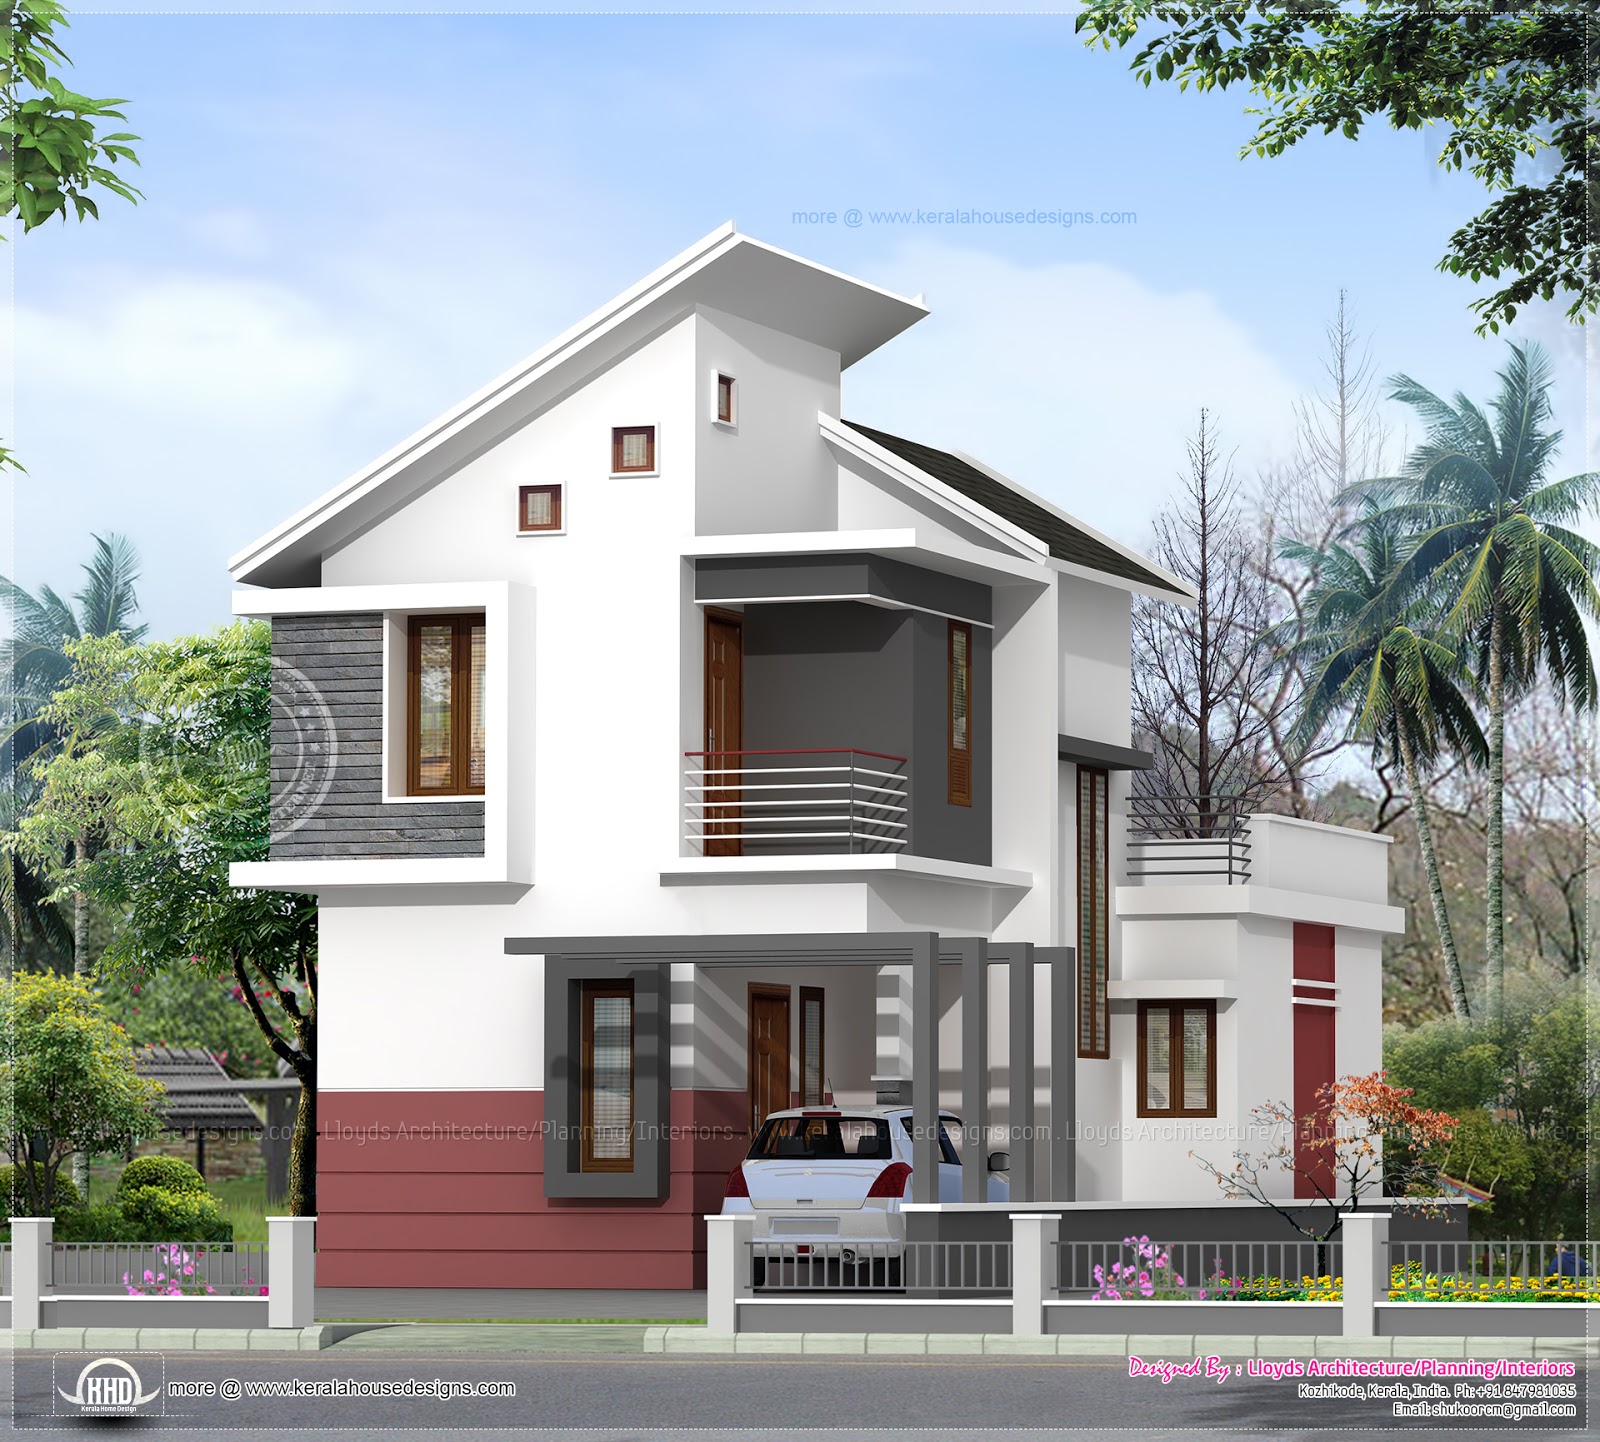 1197 sq ft 3 bedroom villa in 3 cents plot Kerala home 